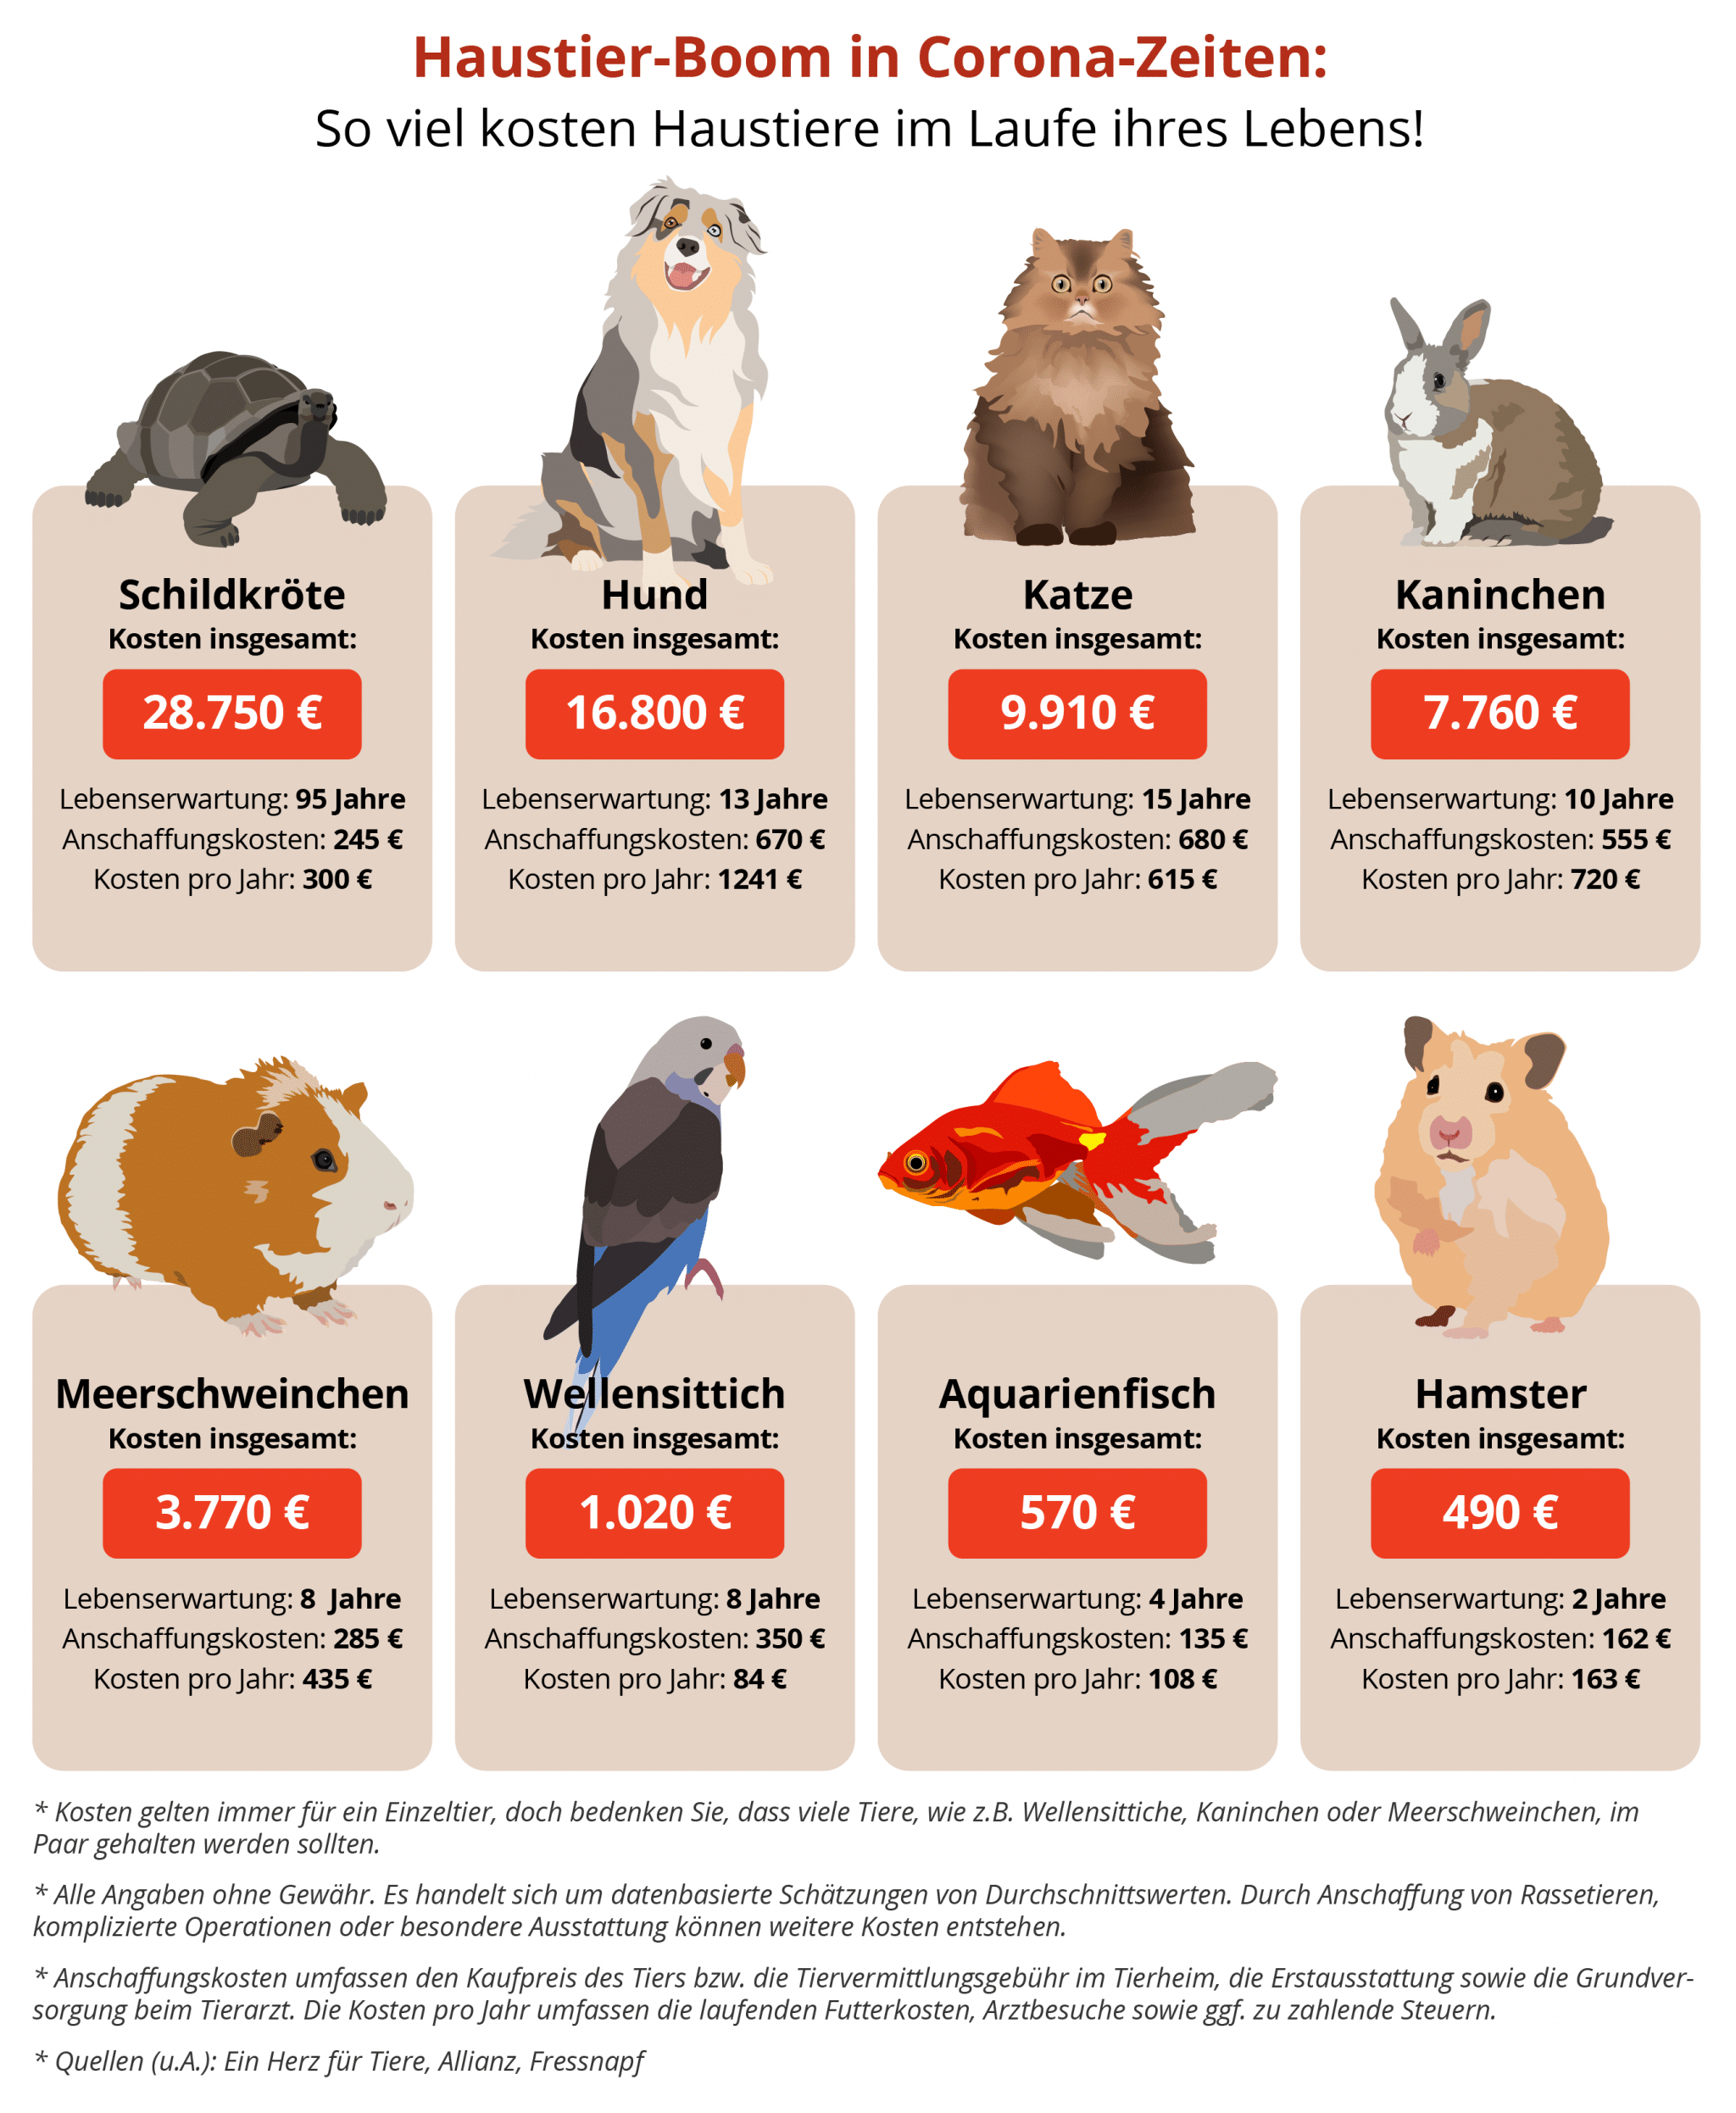 So viel kostet dich dein Haustier im Laufe des Lebens